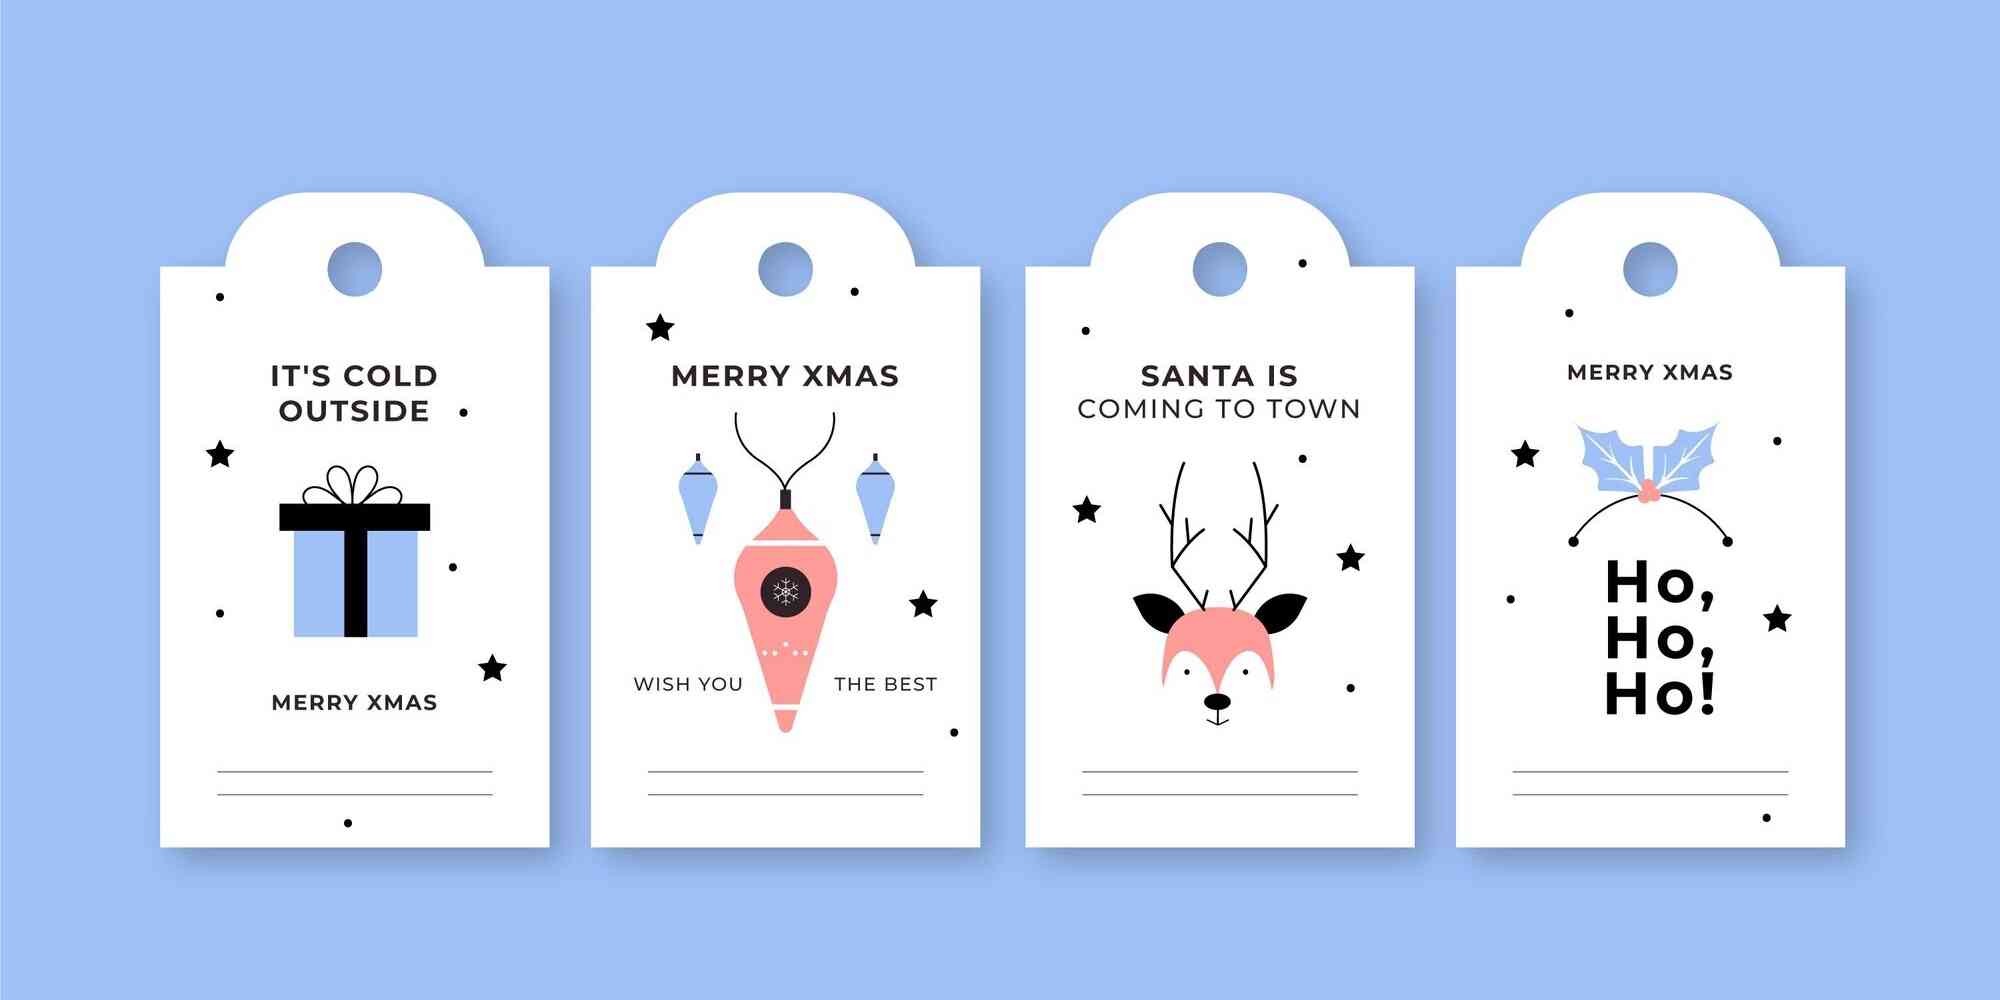 图中画了4个白色的标签，上面写有圣诞节相关的祝福语，具体包括“Merry Xmas”、“Santa is coming to town”、“Ho, Ho, Ho”、“Wish you the best”。